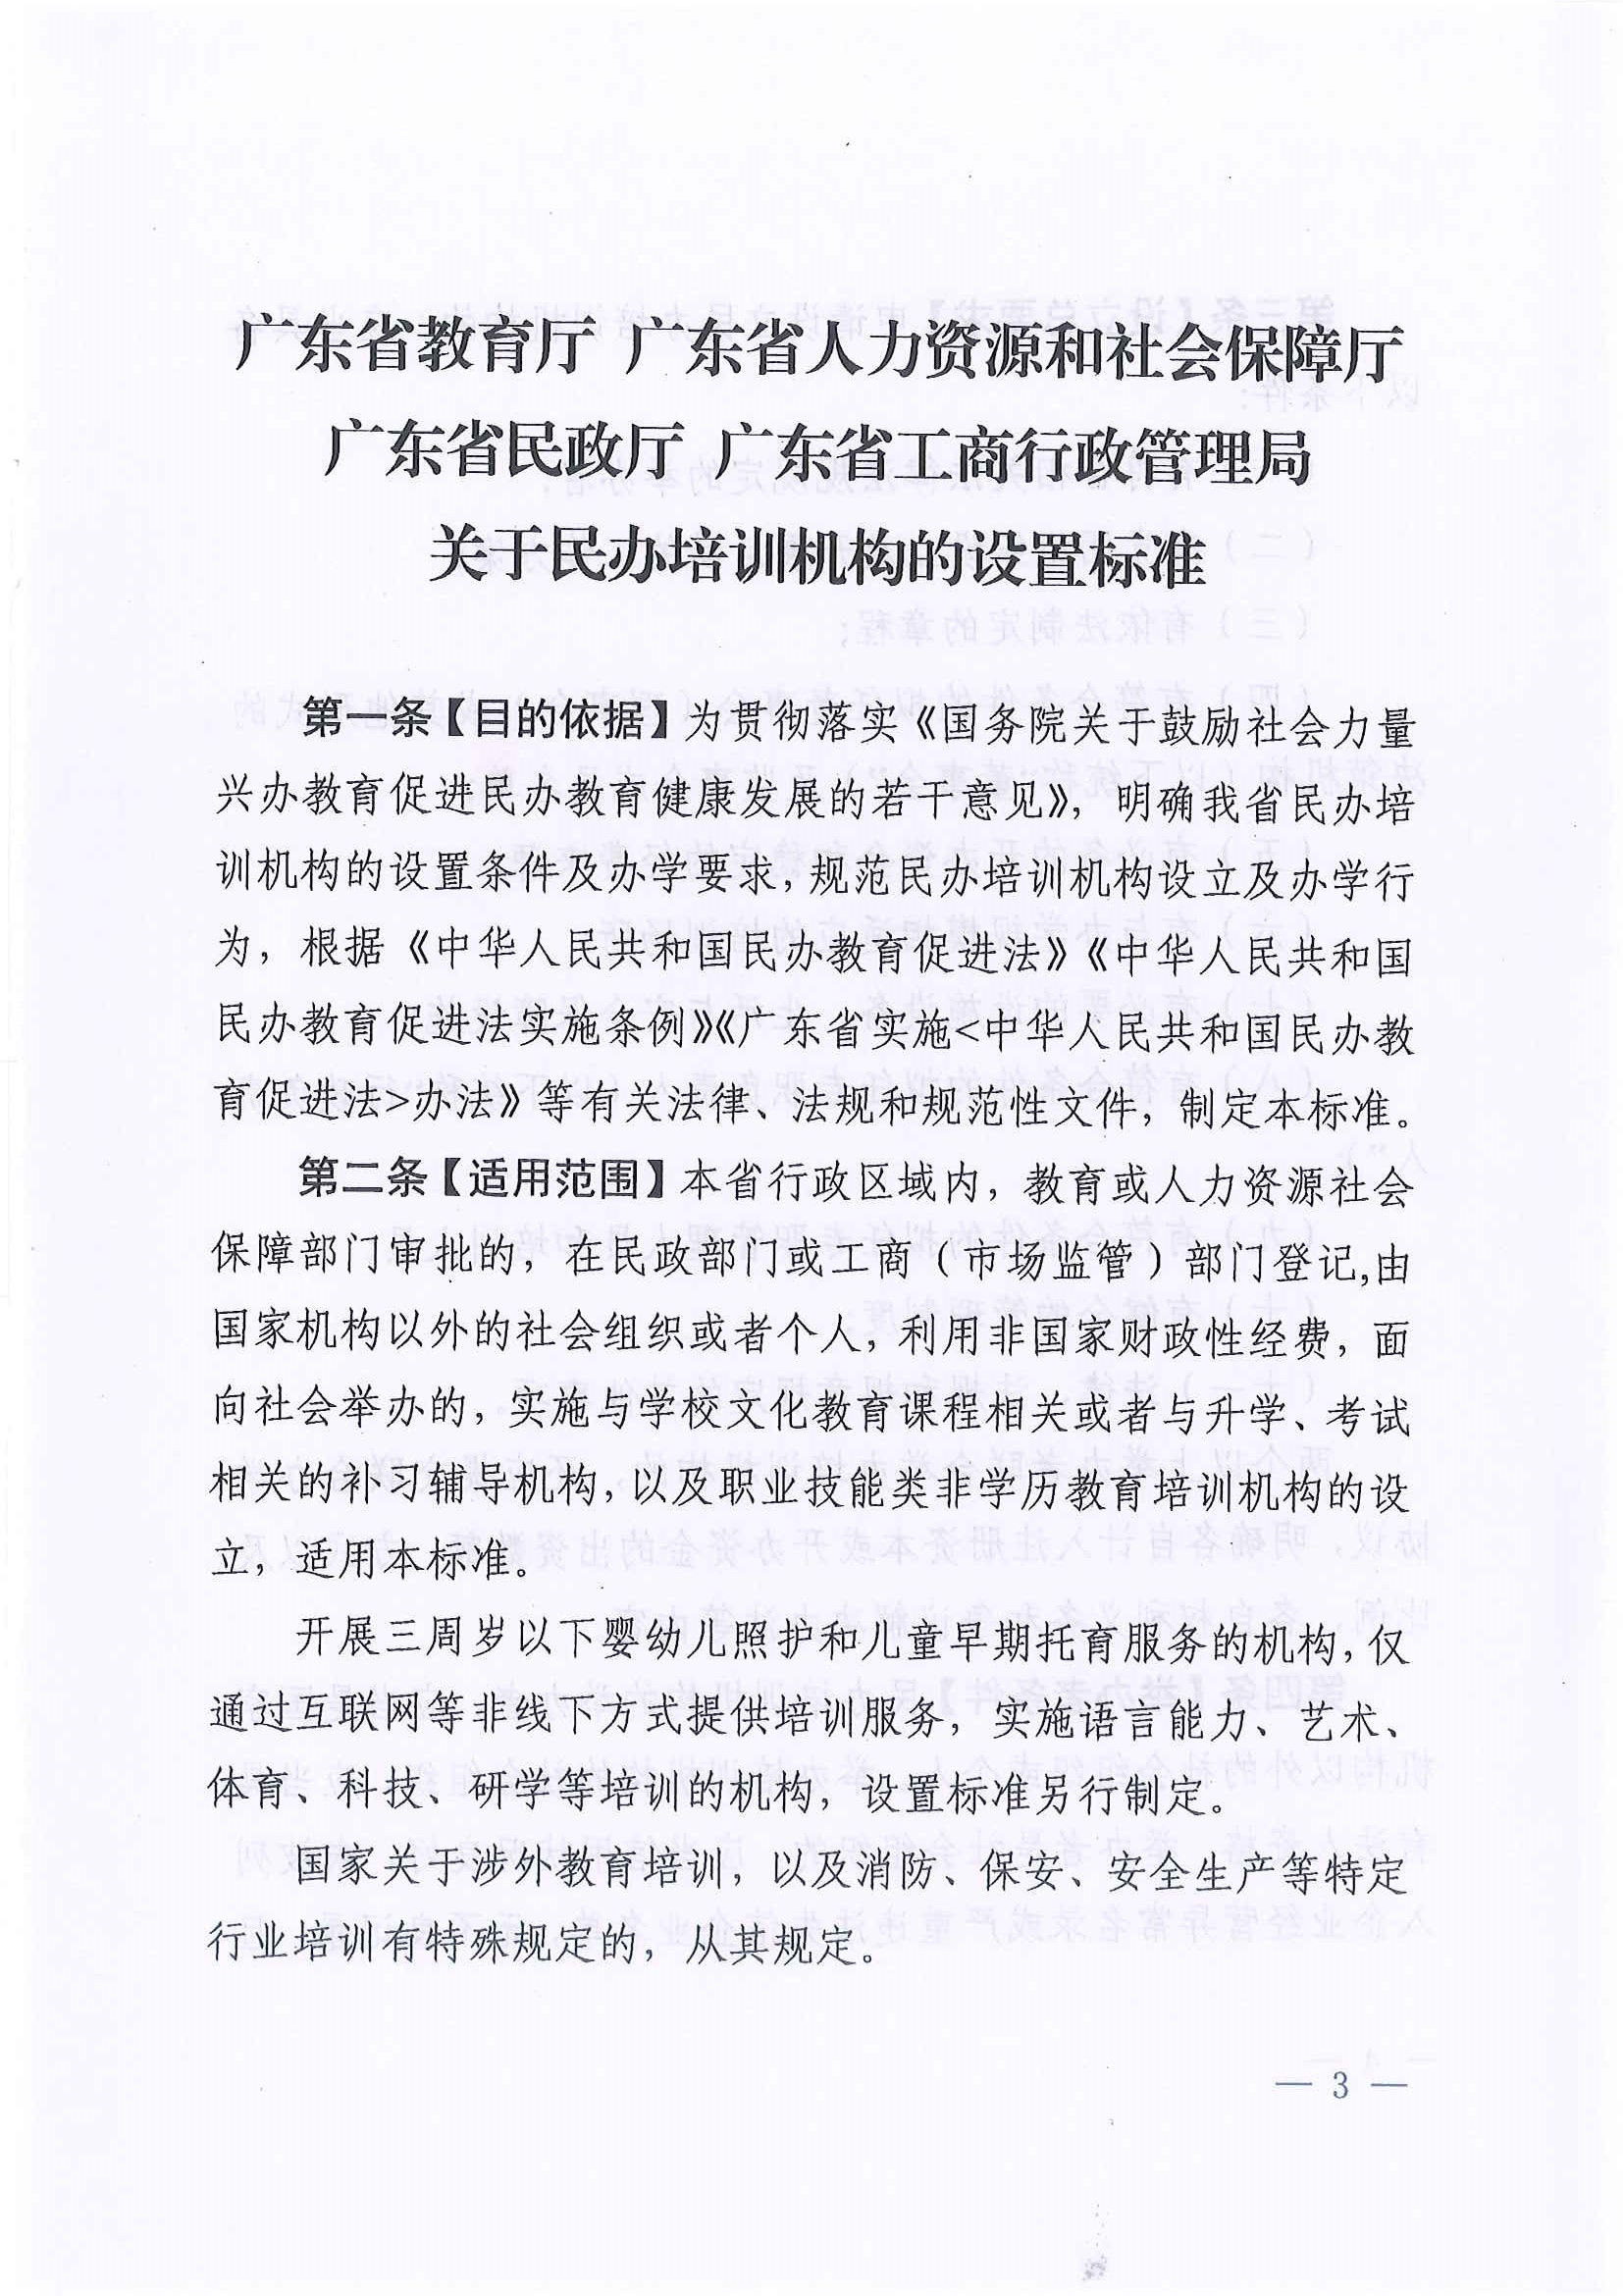 广东省教育厅联合四部门关于印发《民办培训机